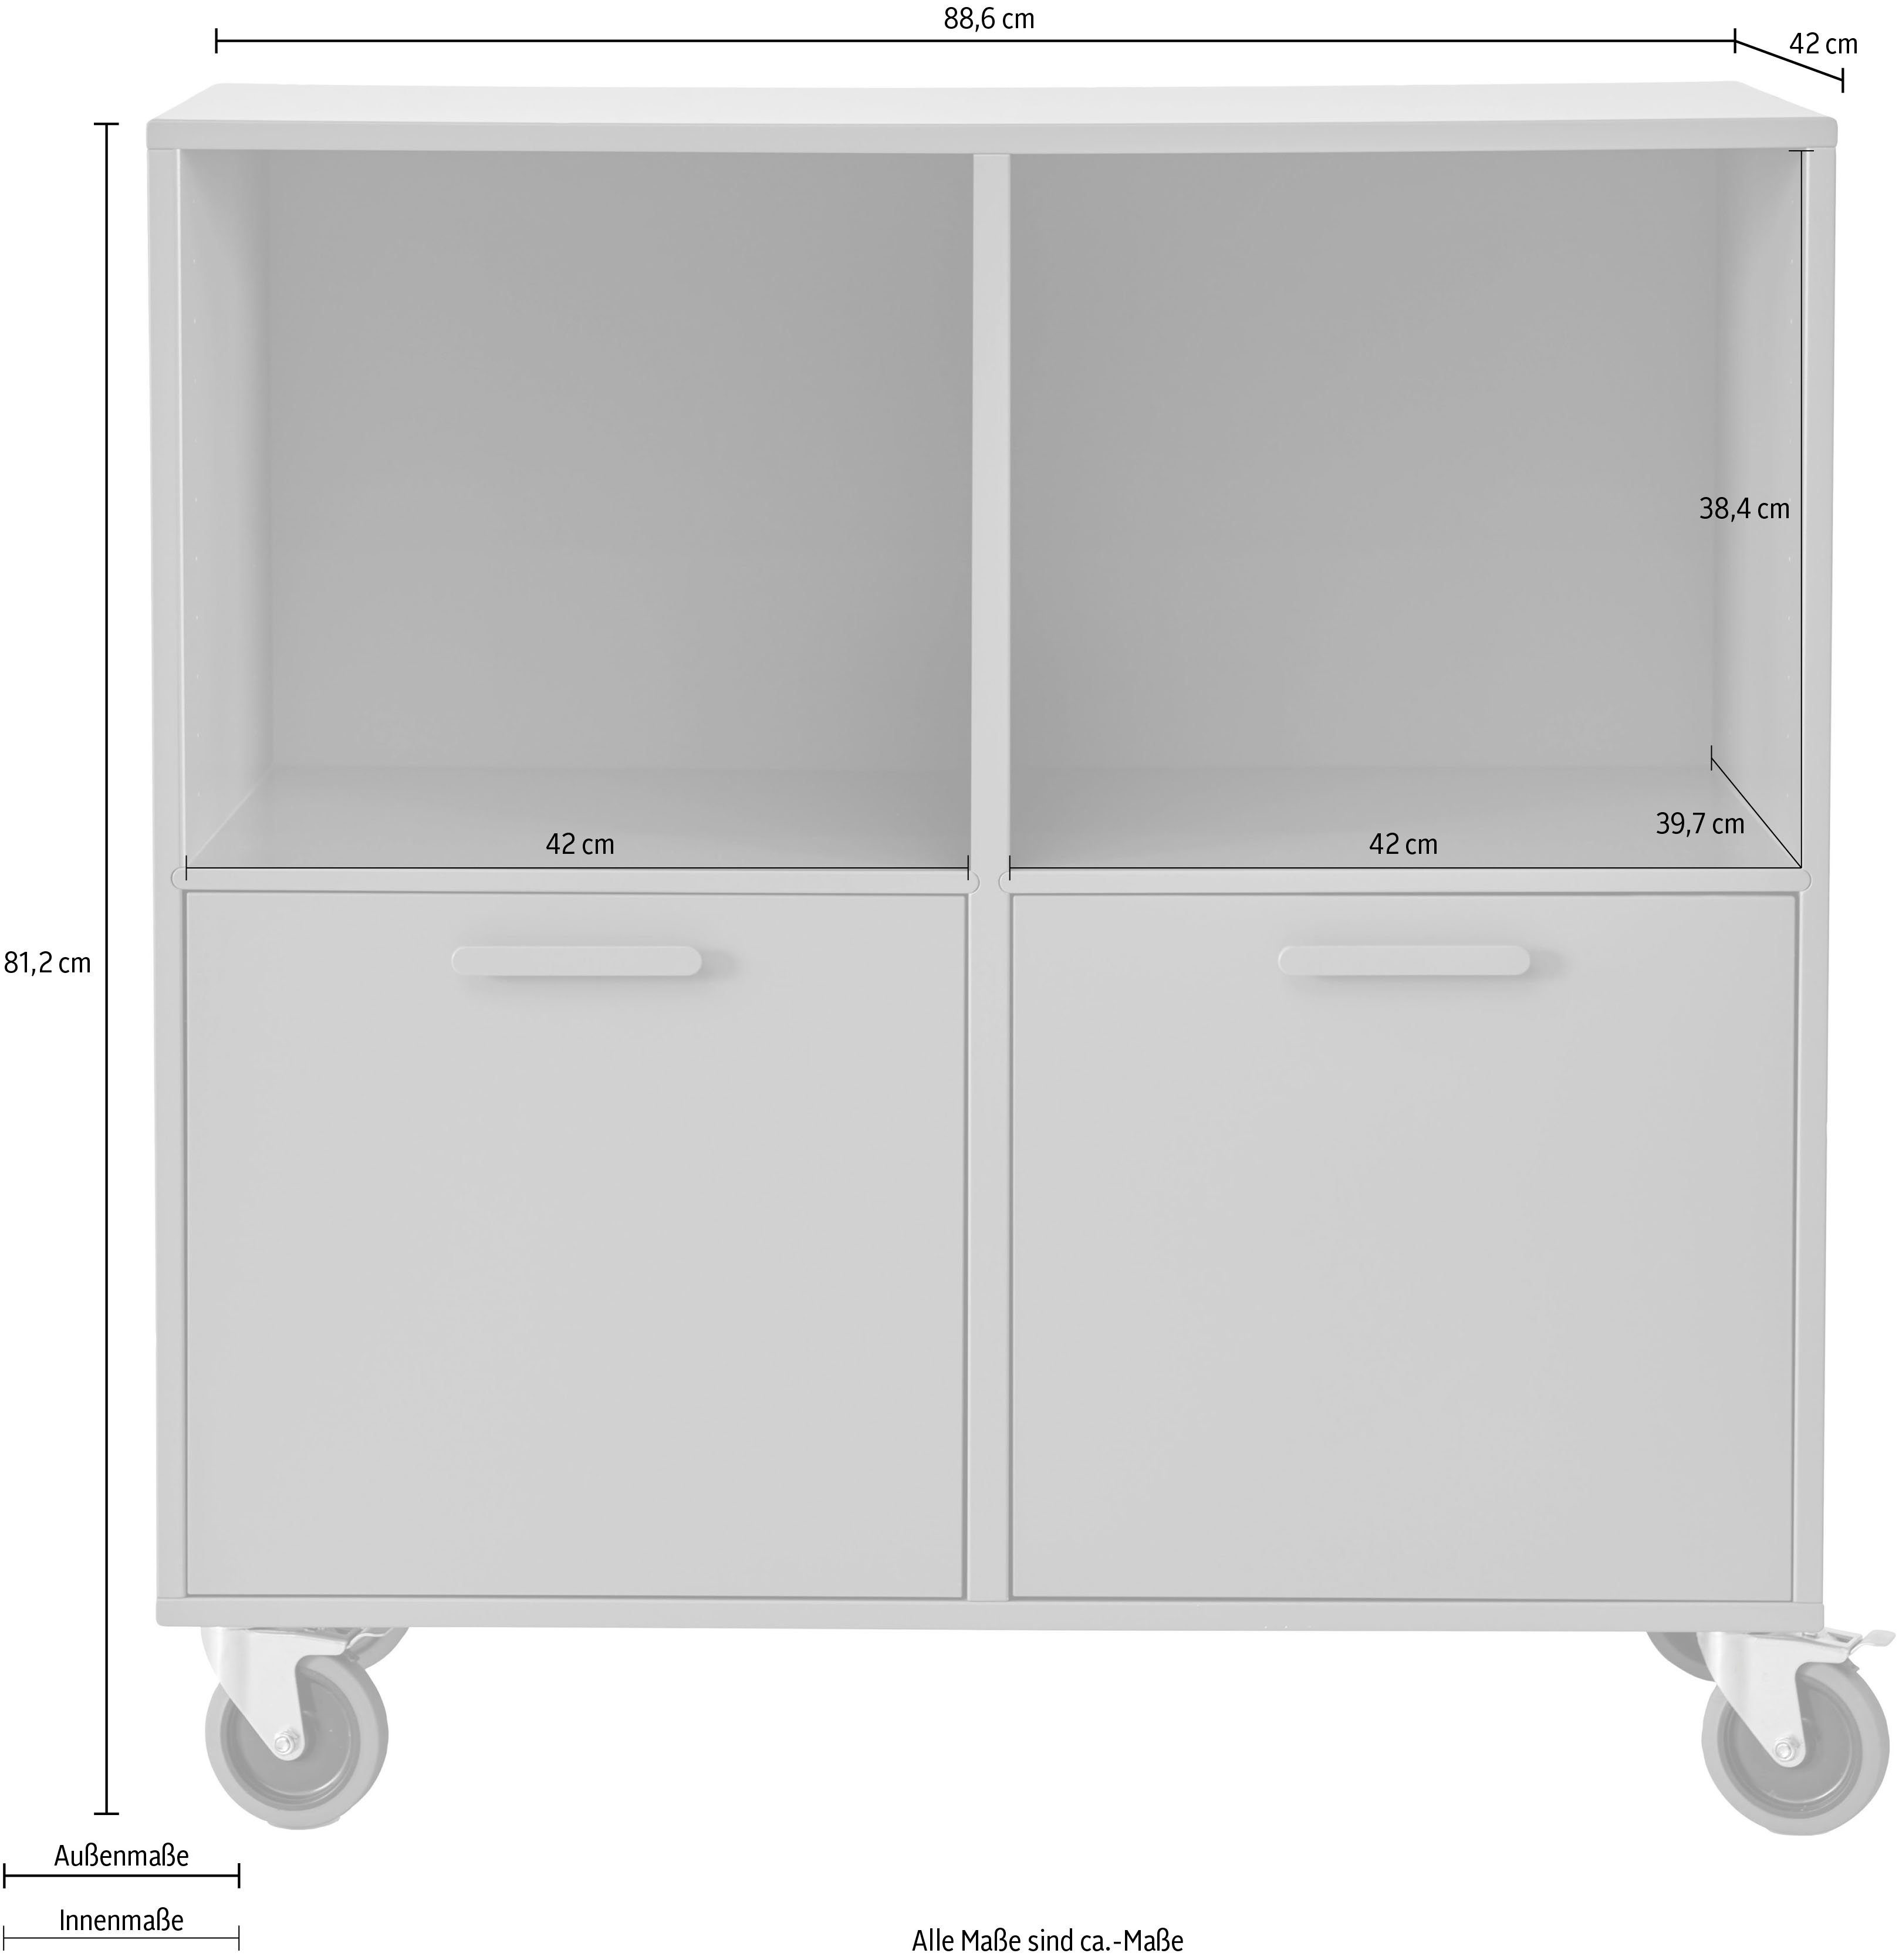 Hammel Furniture Regal Keep by Breite Türen mit Möbelserie | Graphit flexible Rollen, Graphit cm, 2 88,6 und Hammel